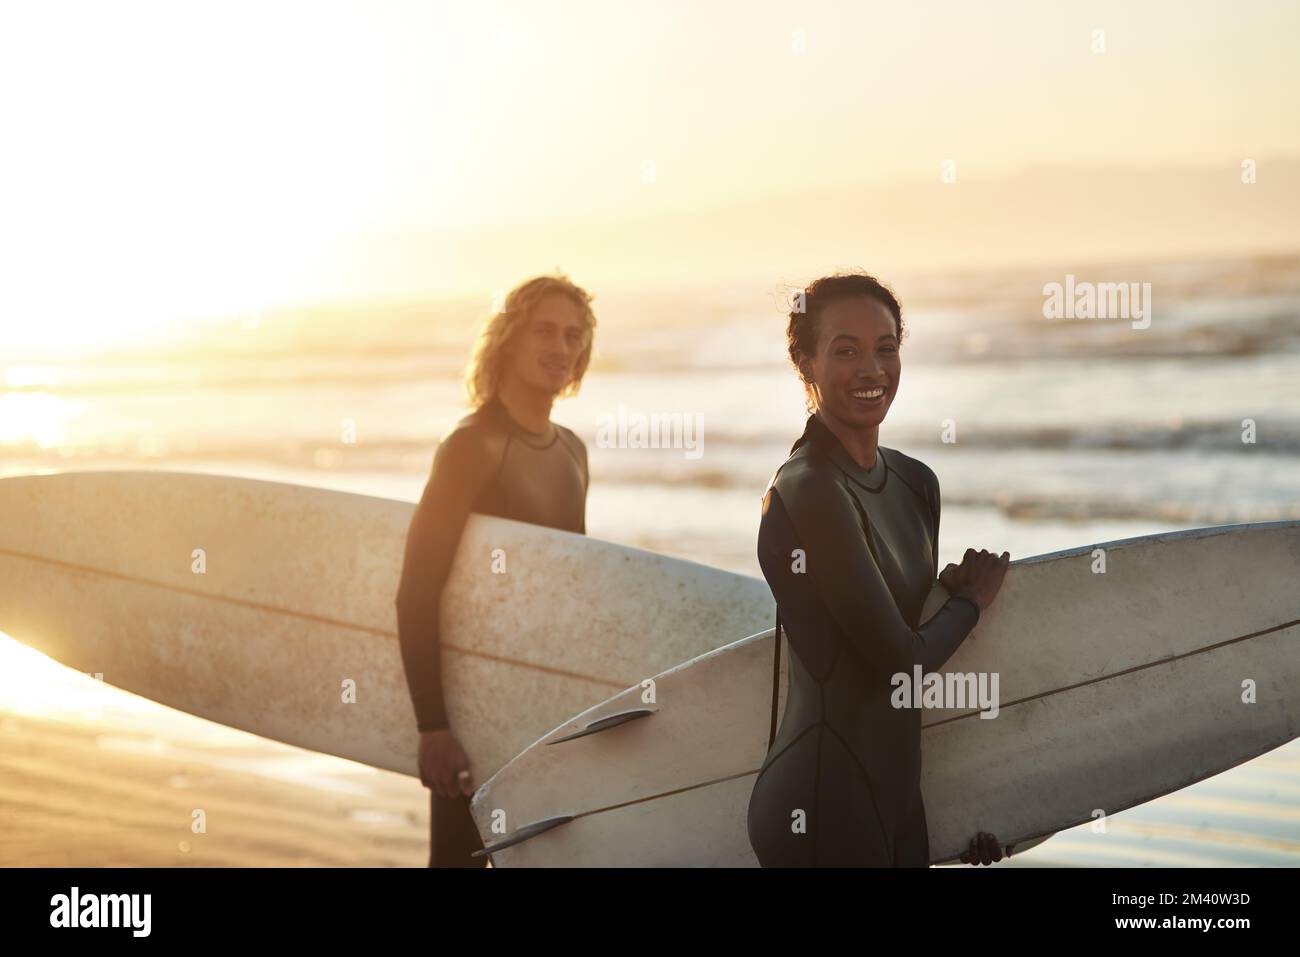 Du wirst uns finden, wo der Himmel auf das Land trifft. Ein fröhliches junges Paar, das am Strand surft. Stockfoto